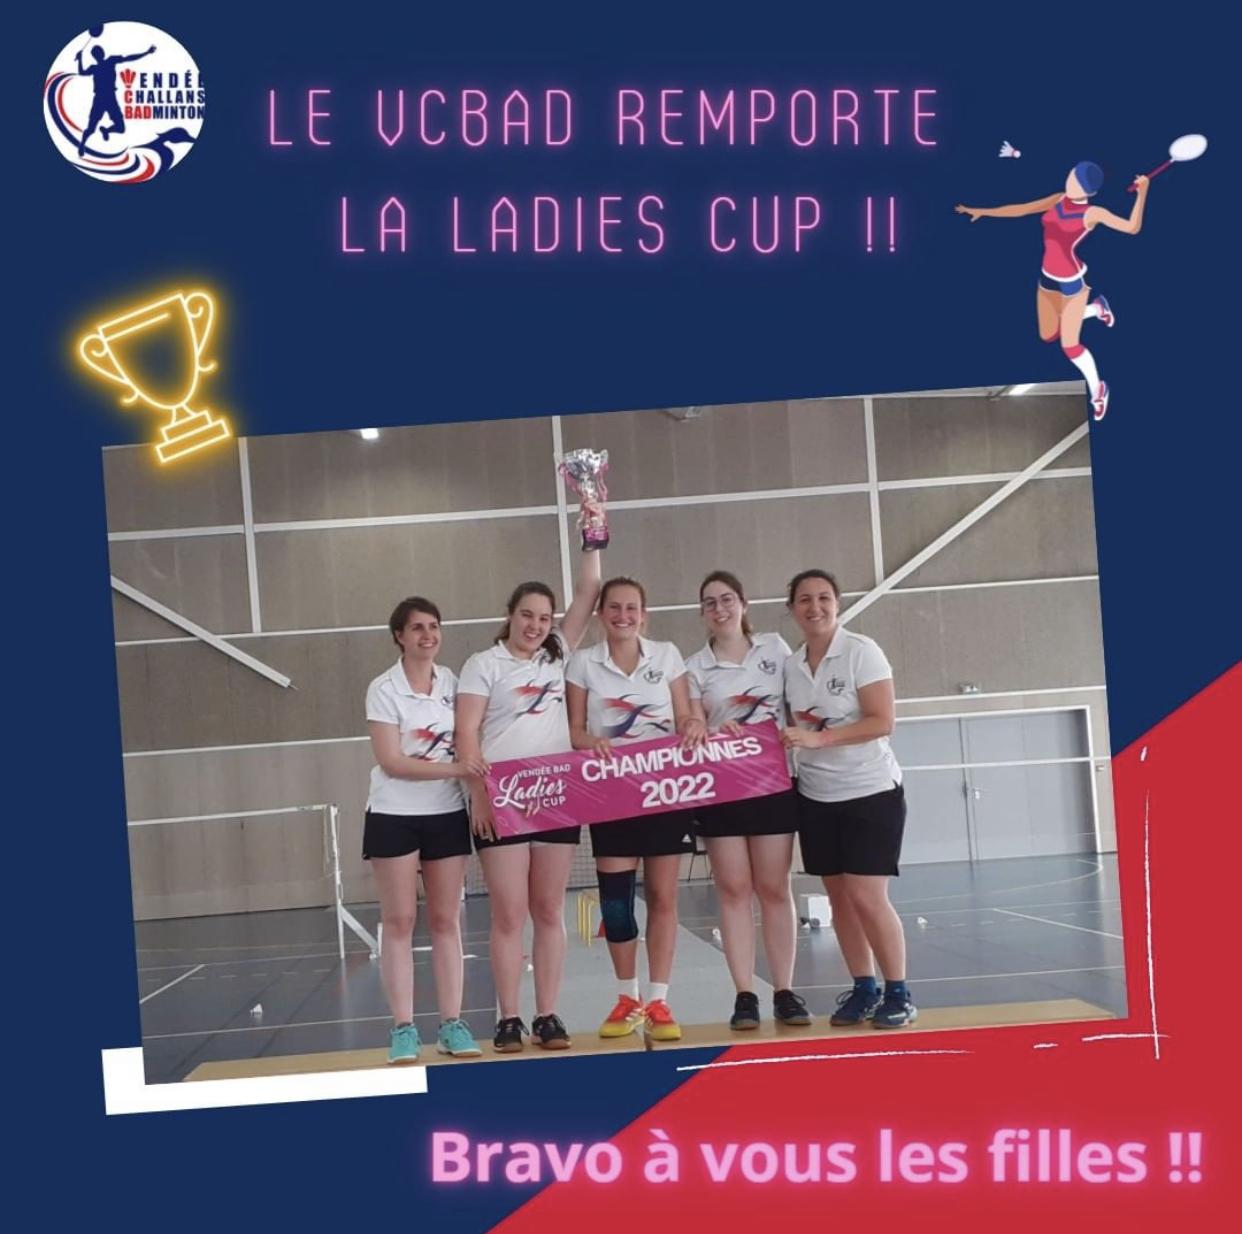 Les filles du VCBAD remportent la Ladies Cup !